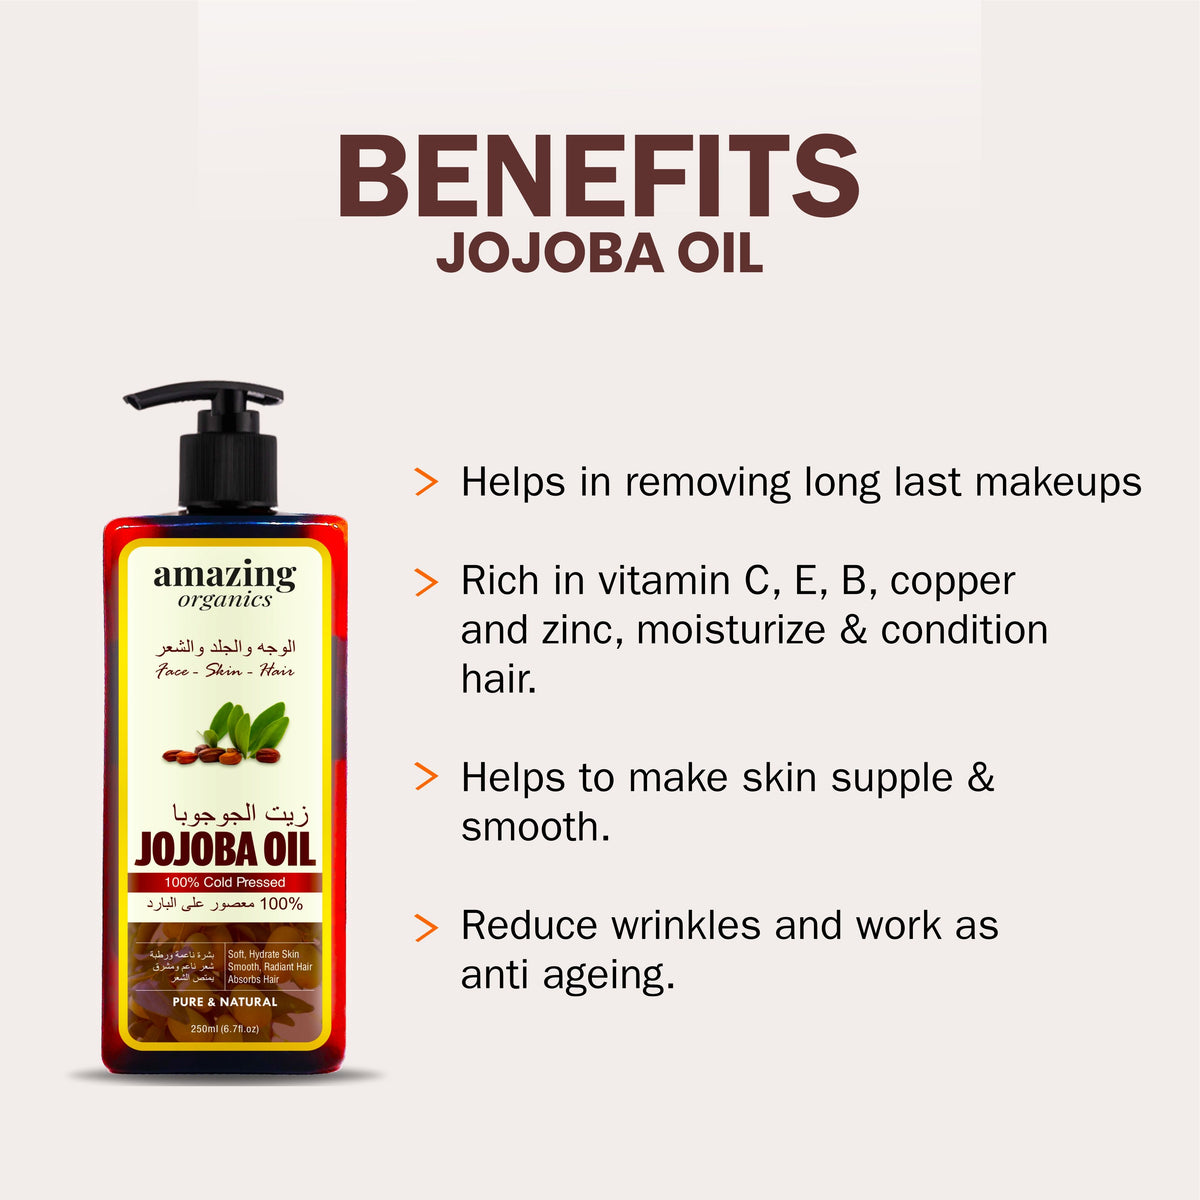 Amazing Organic Jojoba Oil